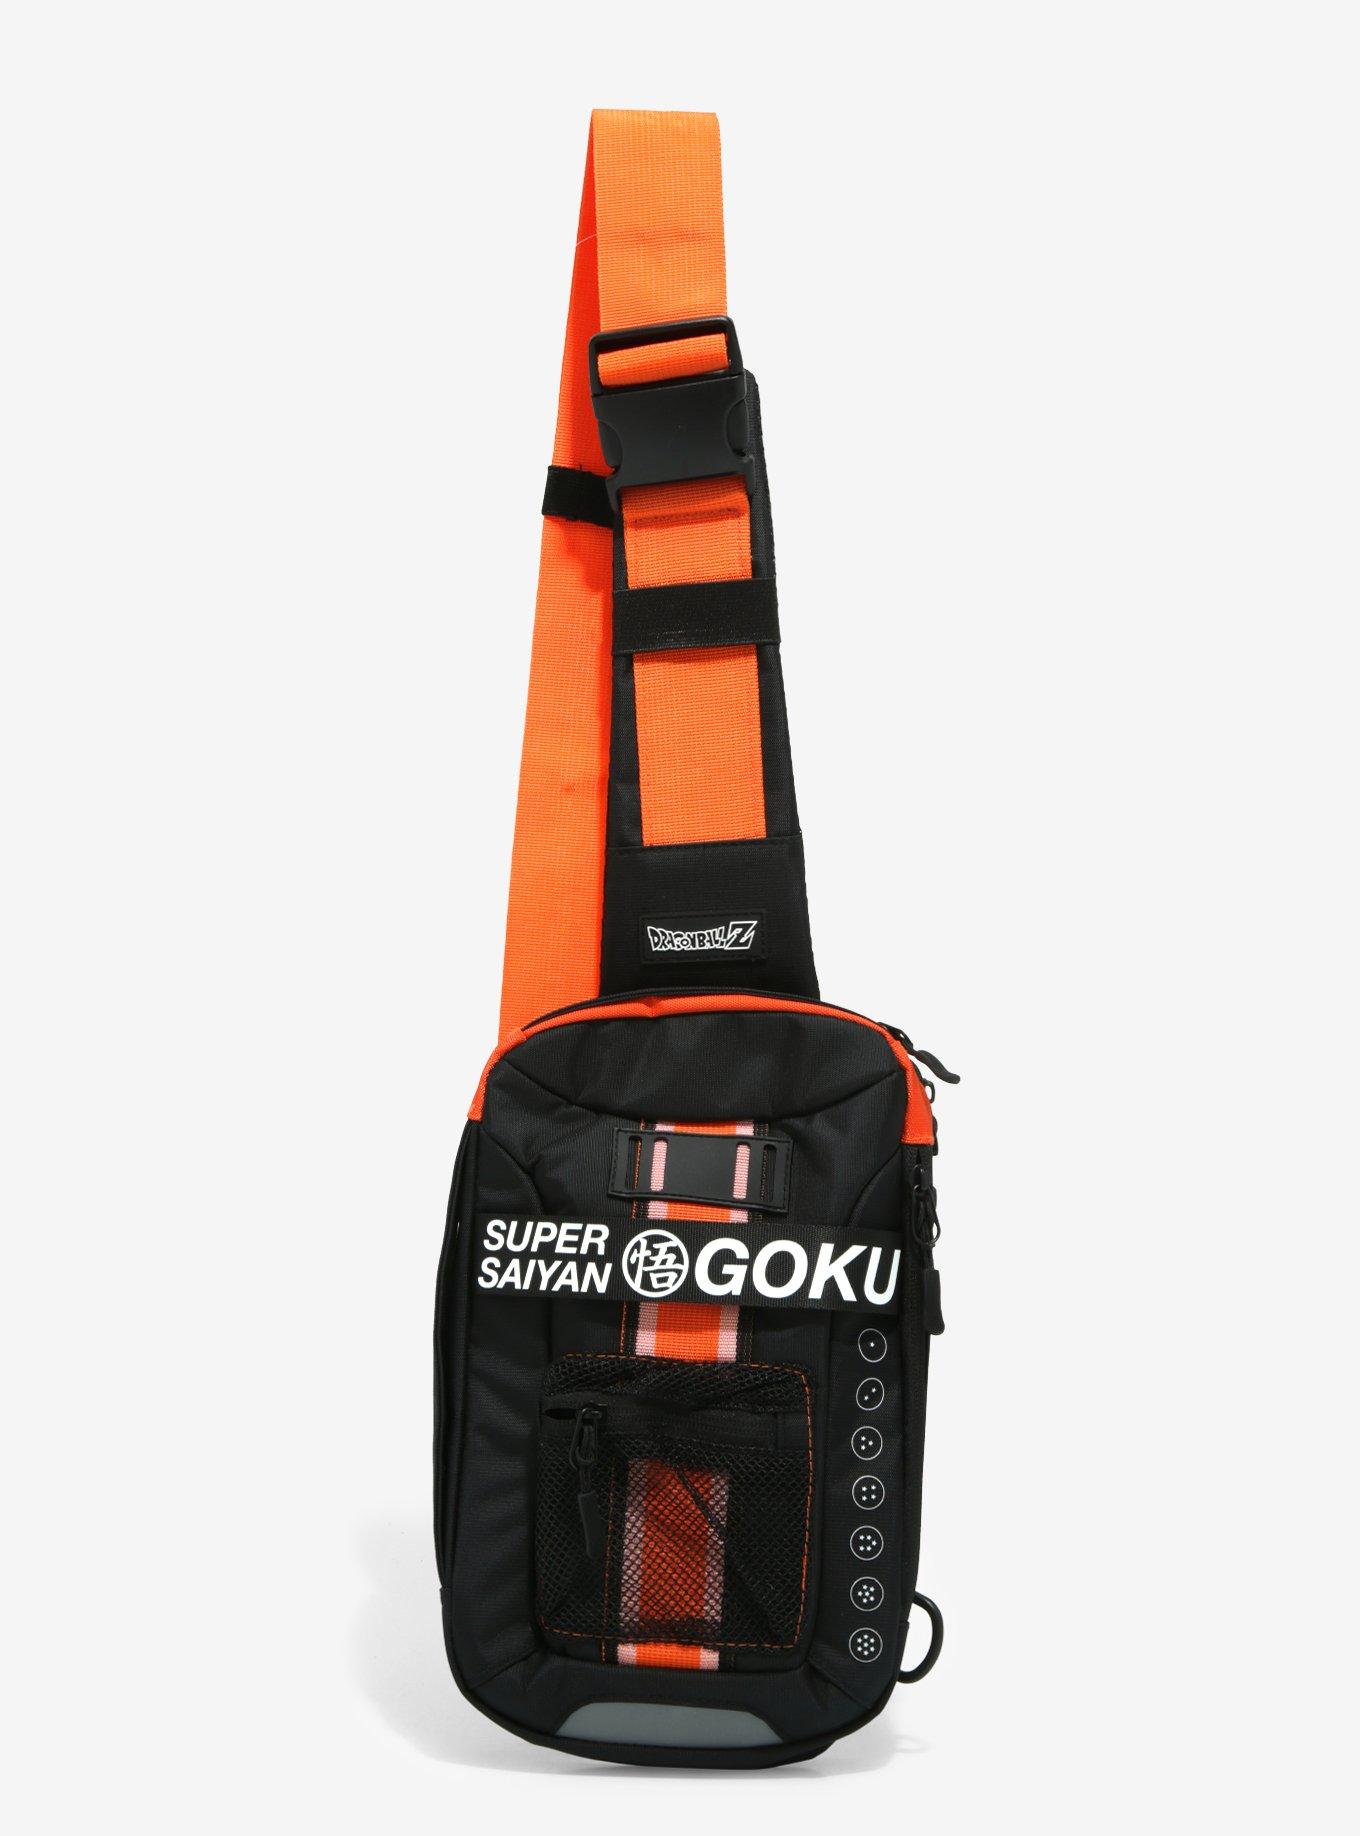 Dragon Ball Goku Backpack, Naruto Backpack